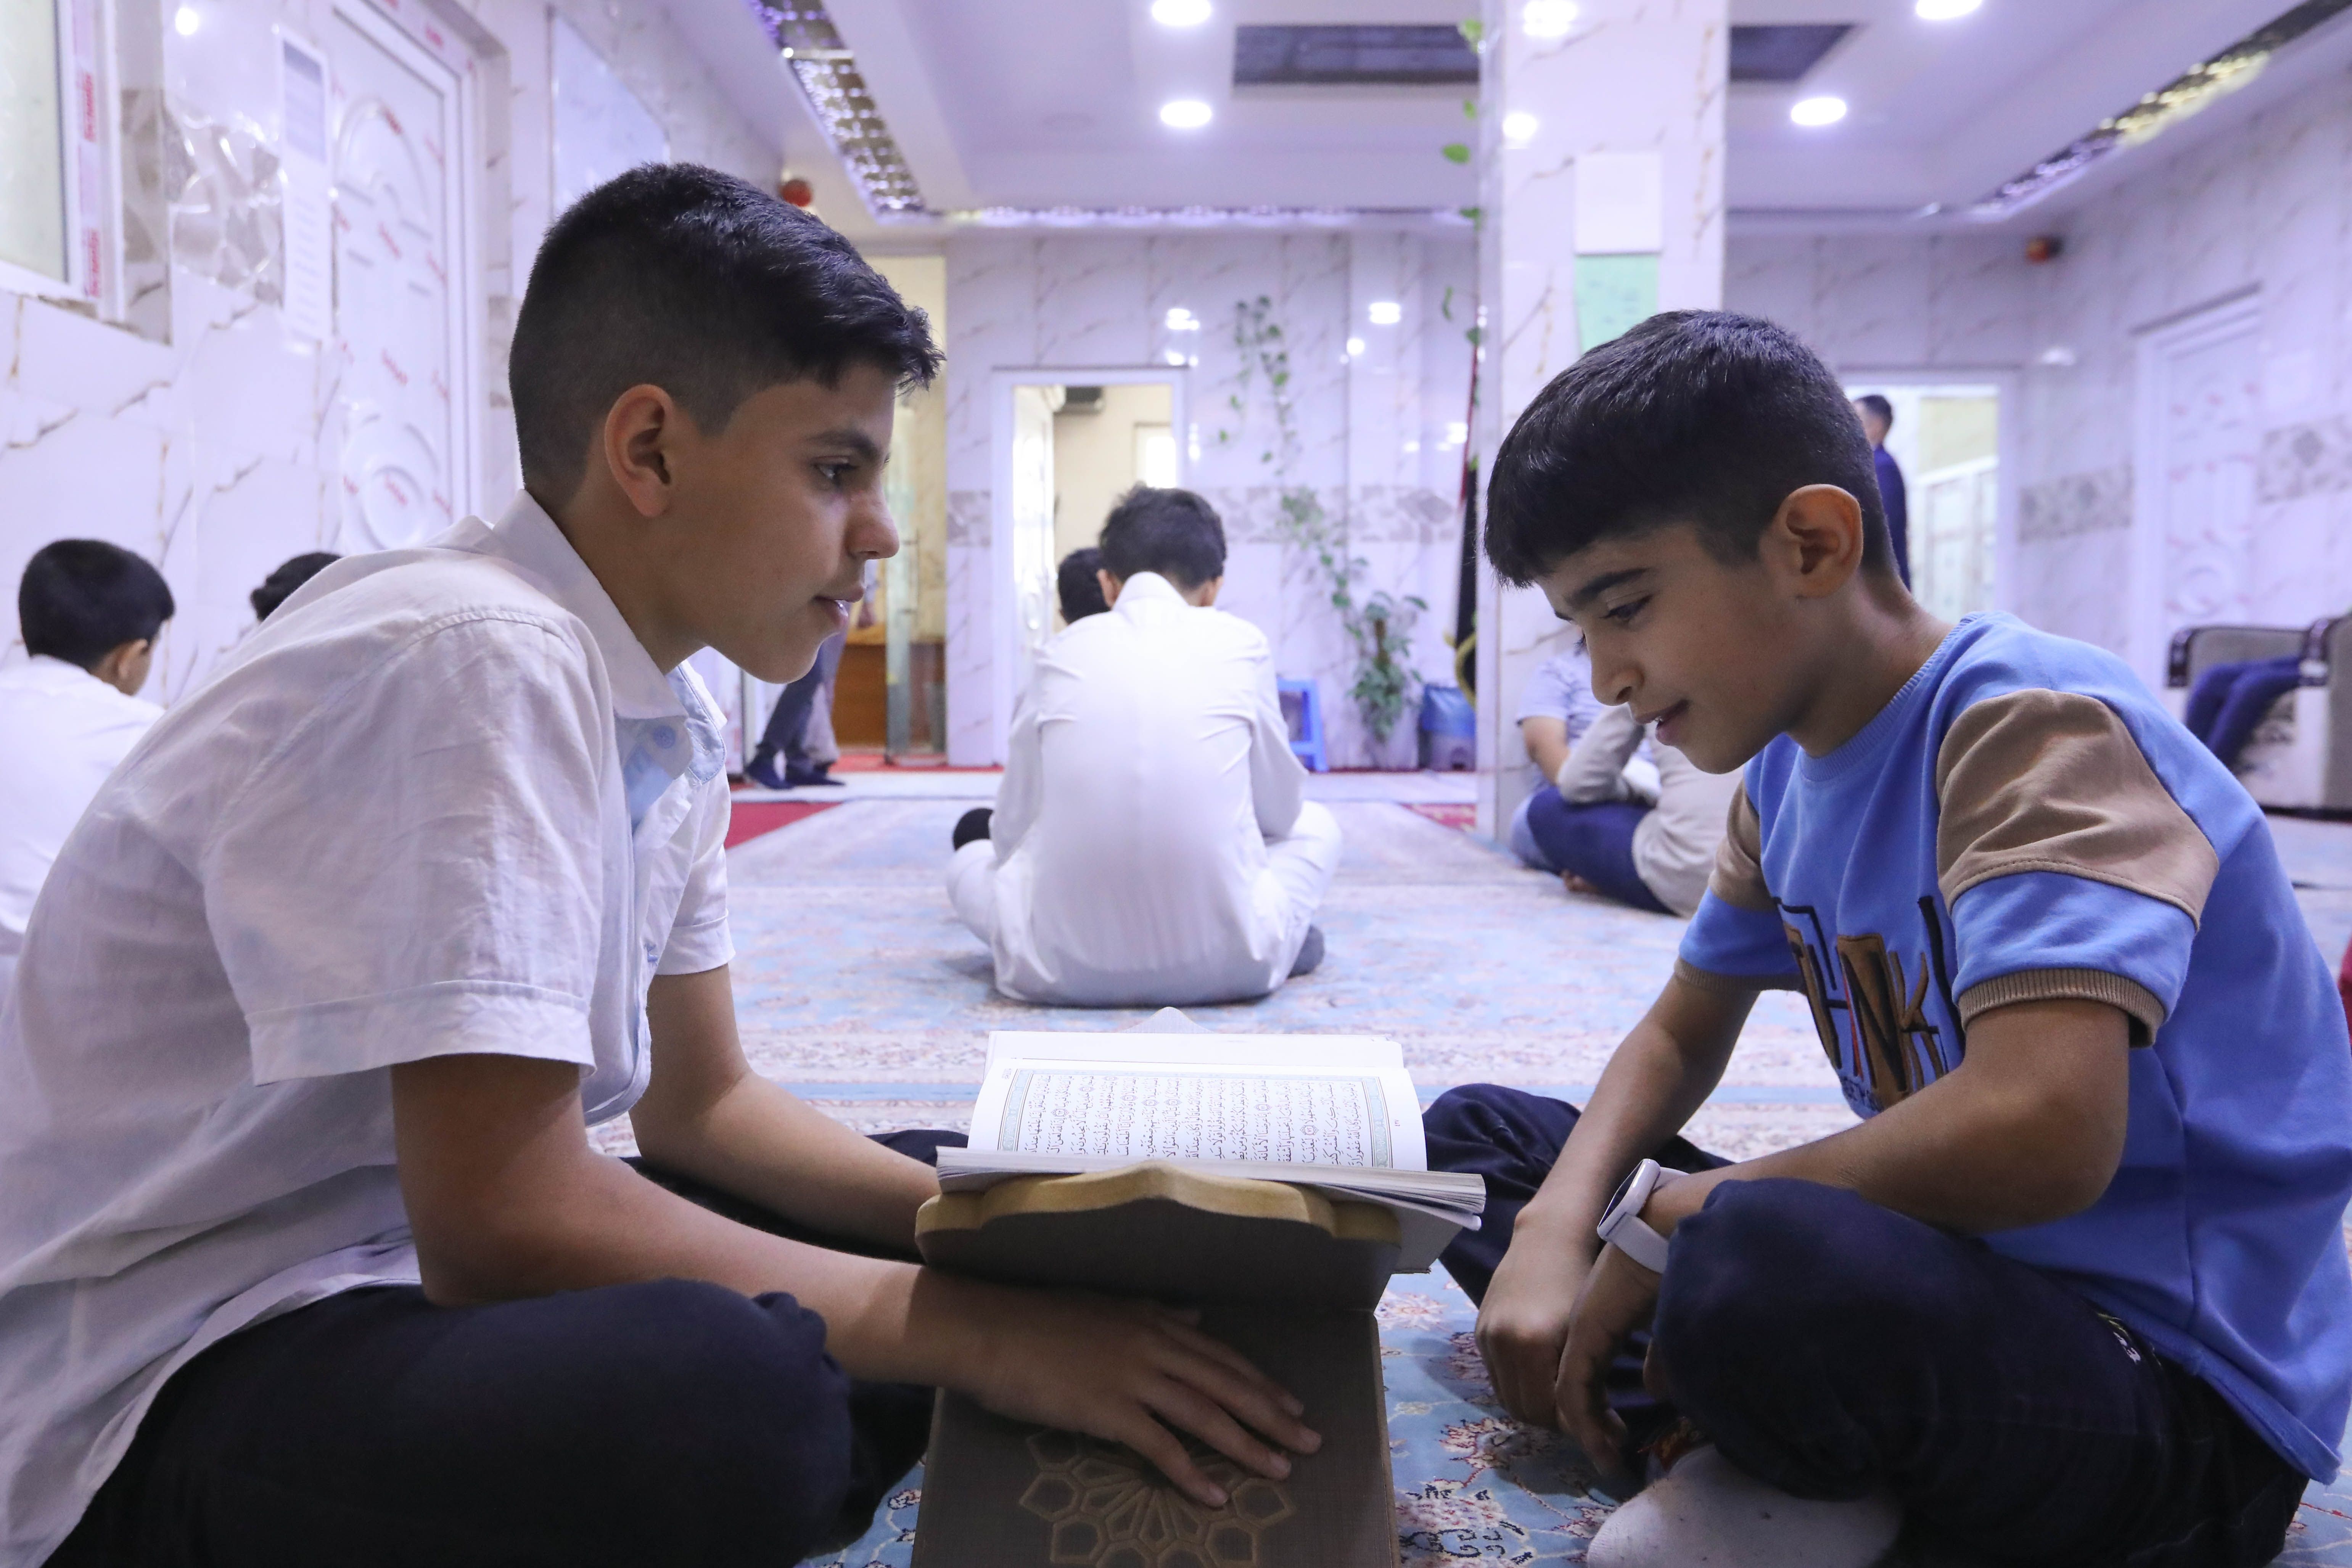 طلبة المجمع العلمي يواصلون دروس حفظ القرآن الكريم ويحققون تقدماً كبيراً